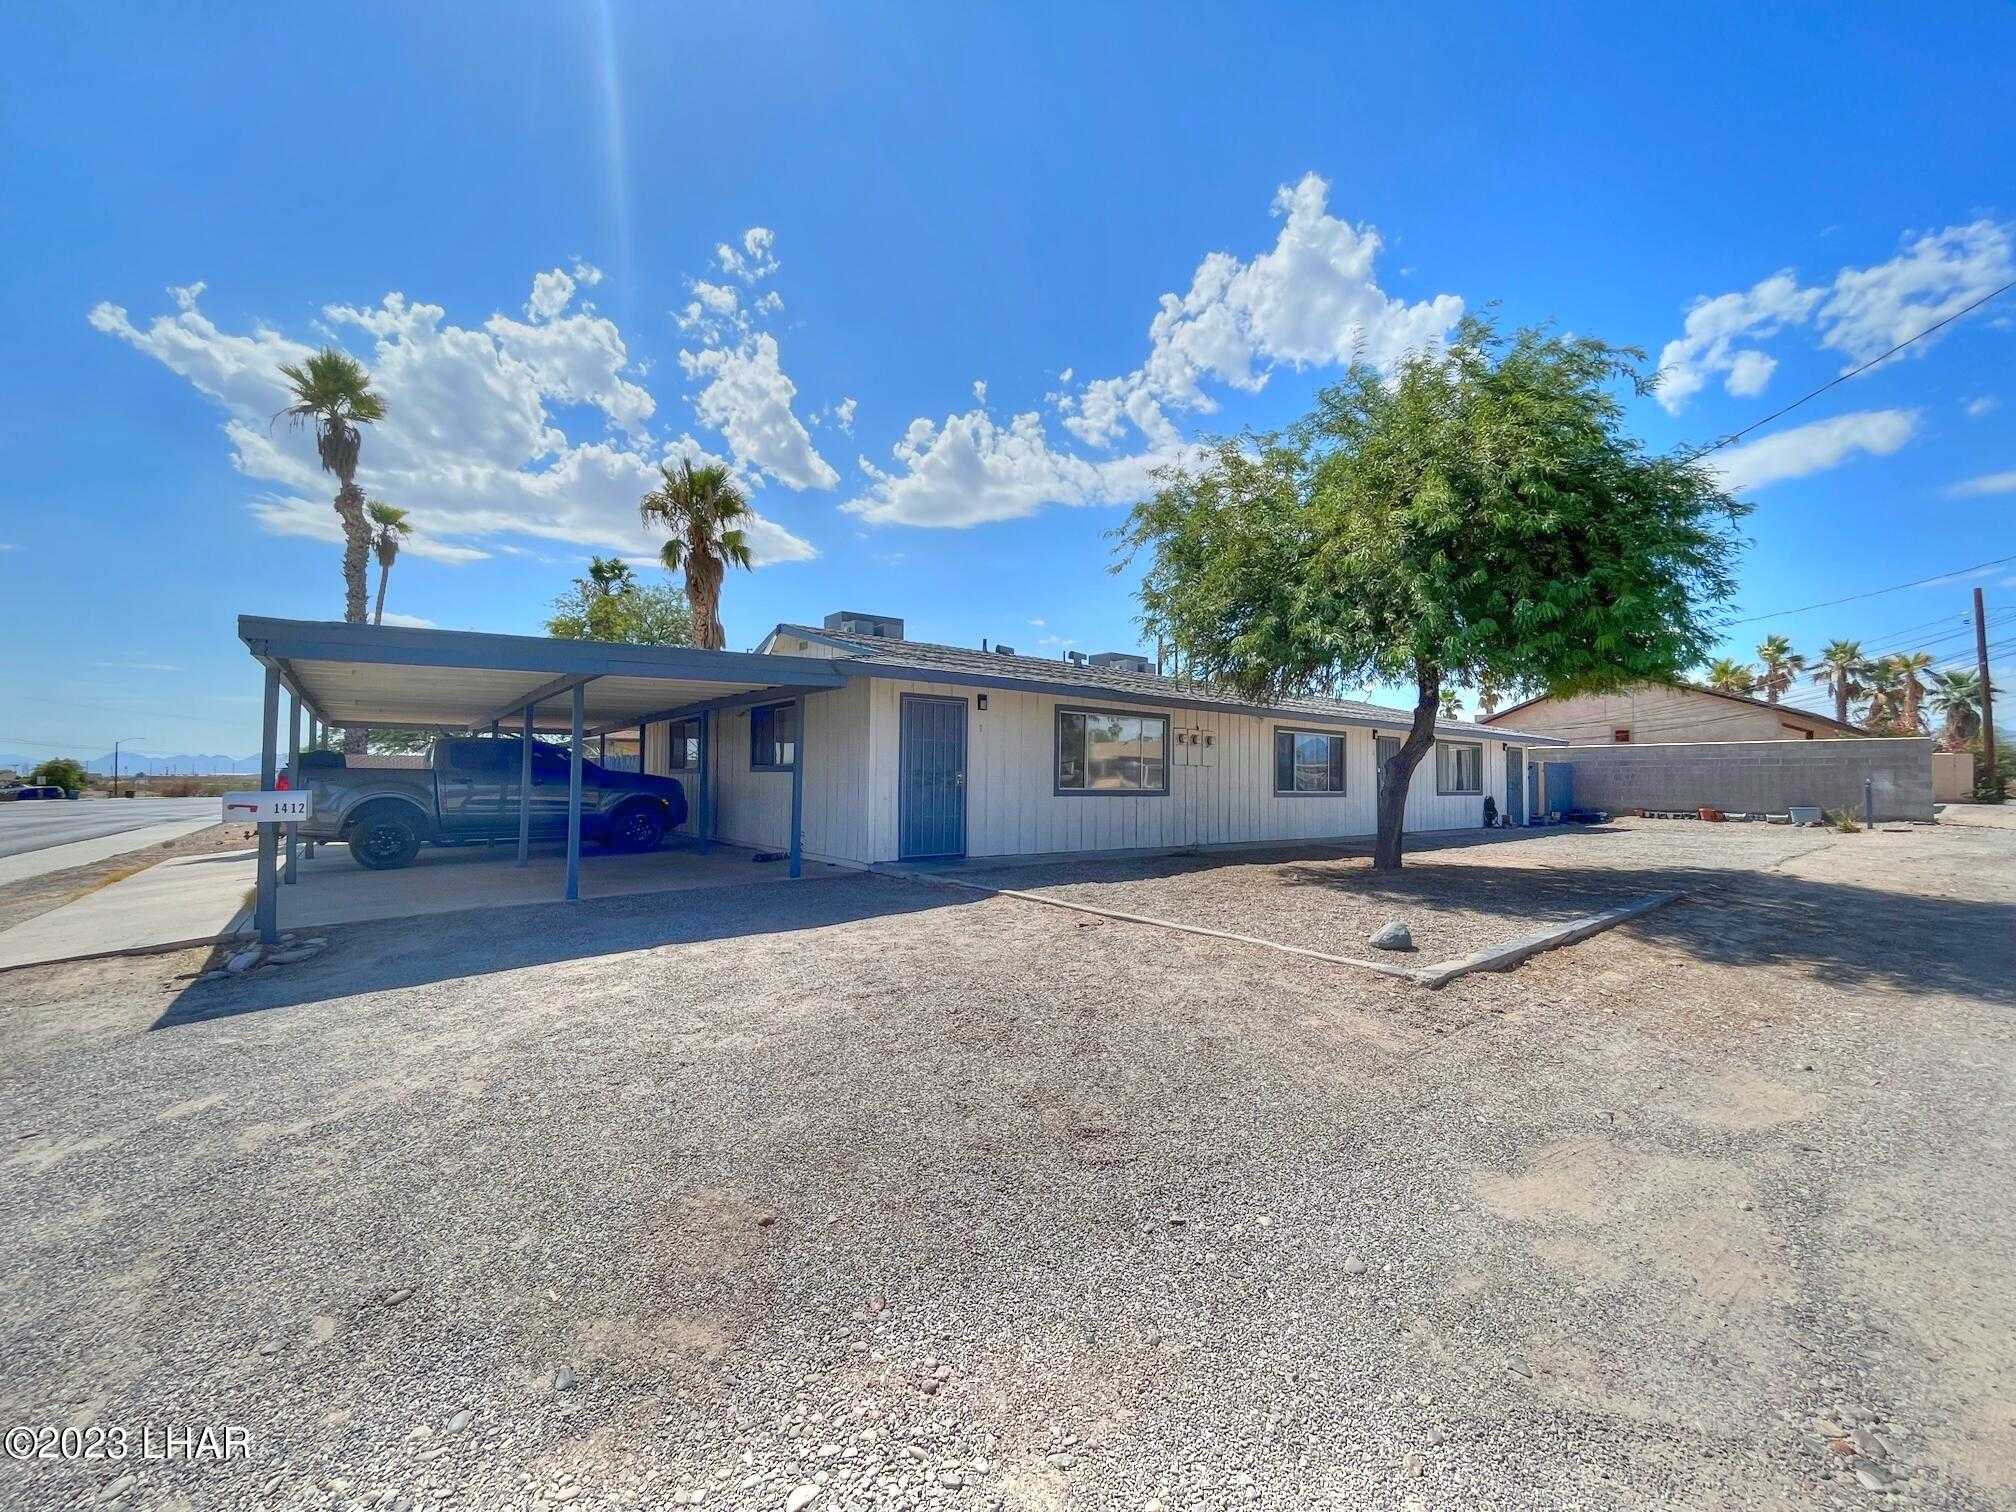 View Parker, AZ 85344 property